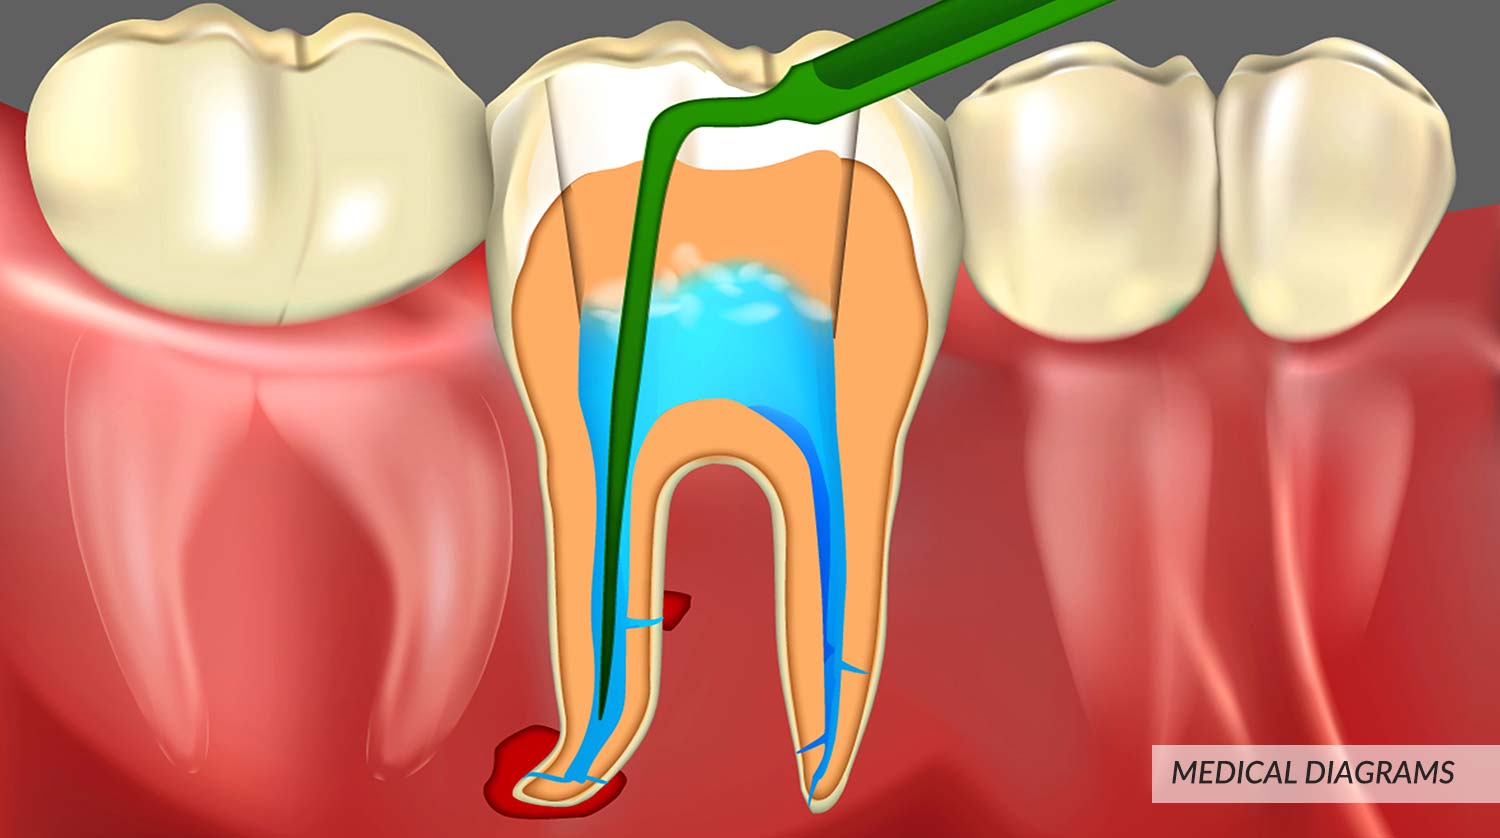 Digital illustration of Teeth Operate